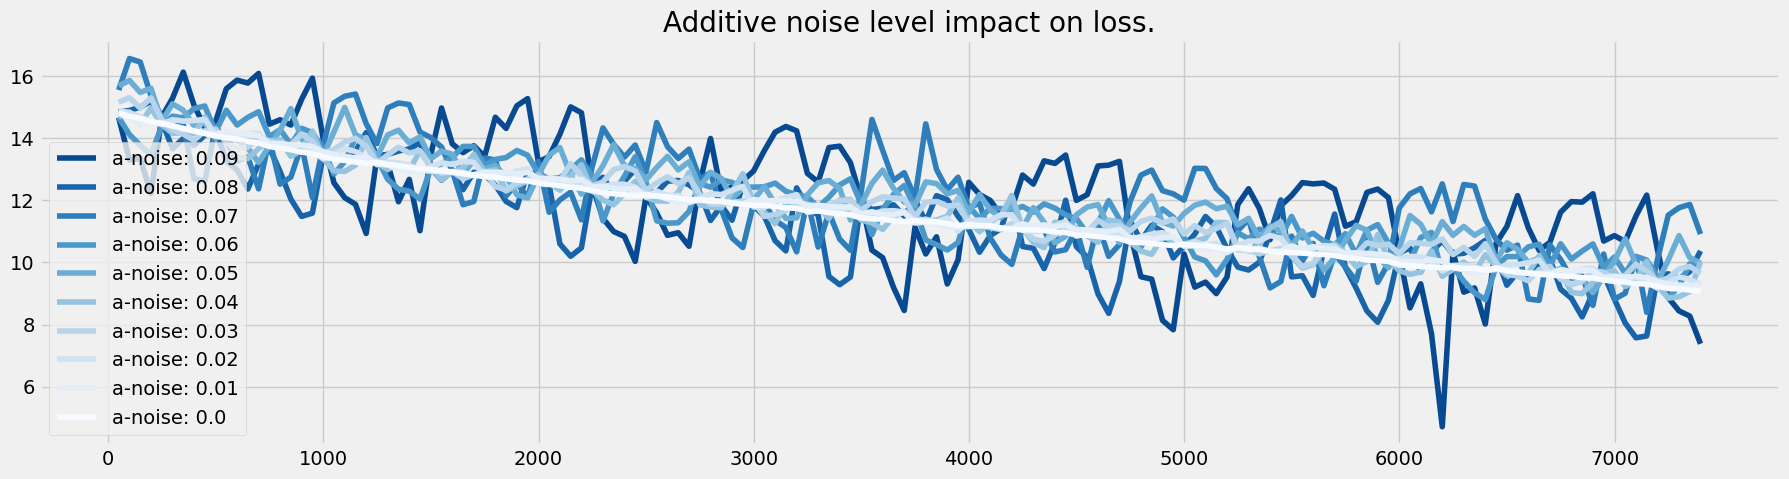 Additive noise